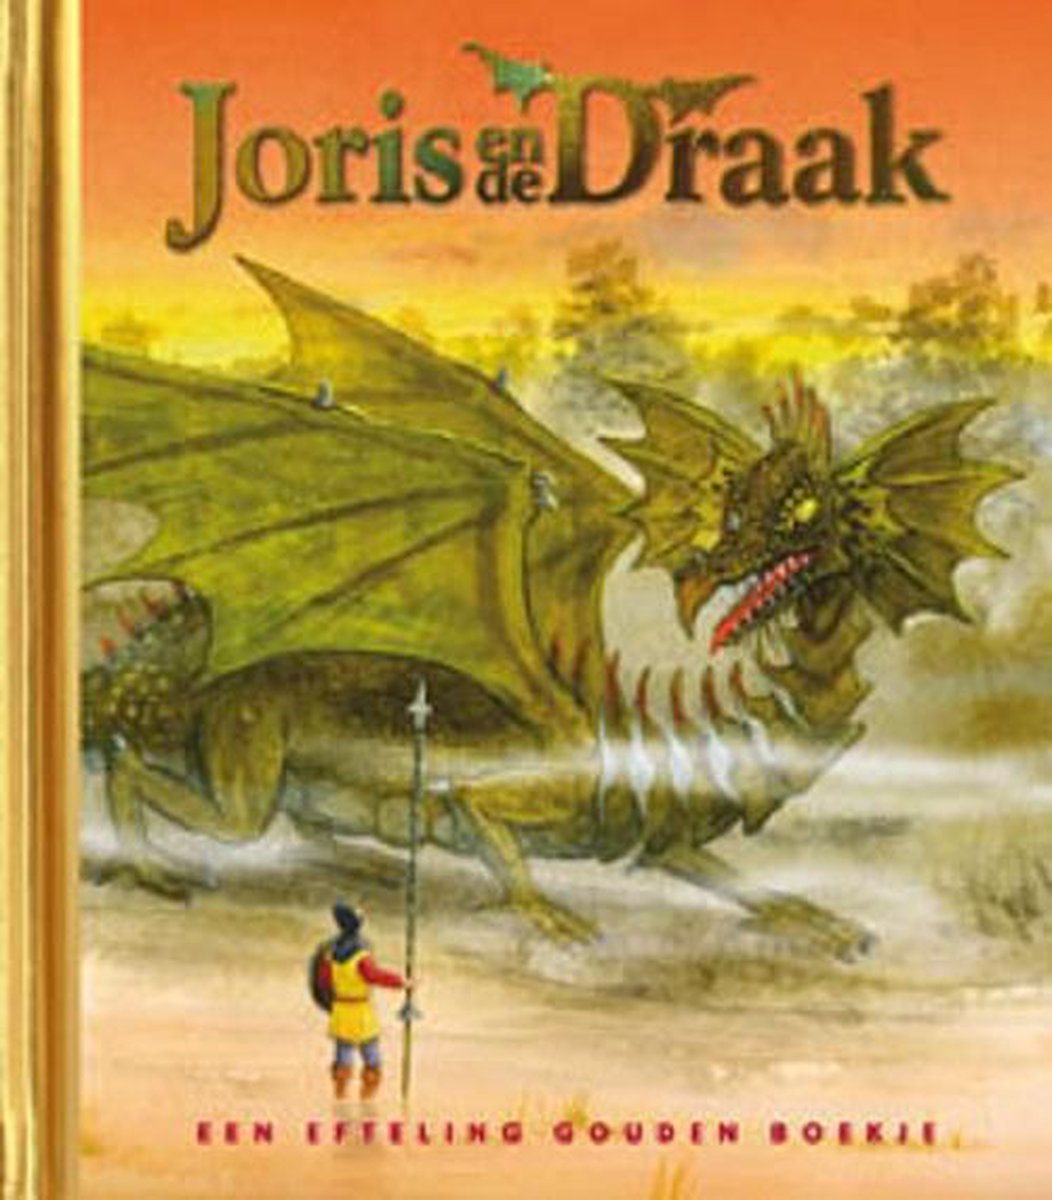 Joris en de draak- Een Efteling gouden boekje 13